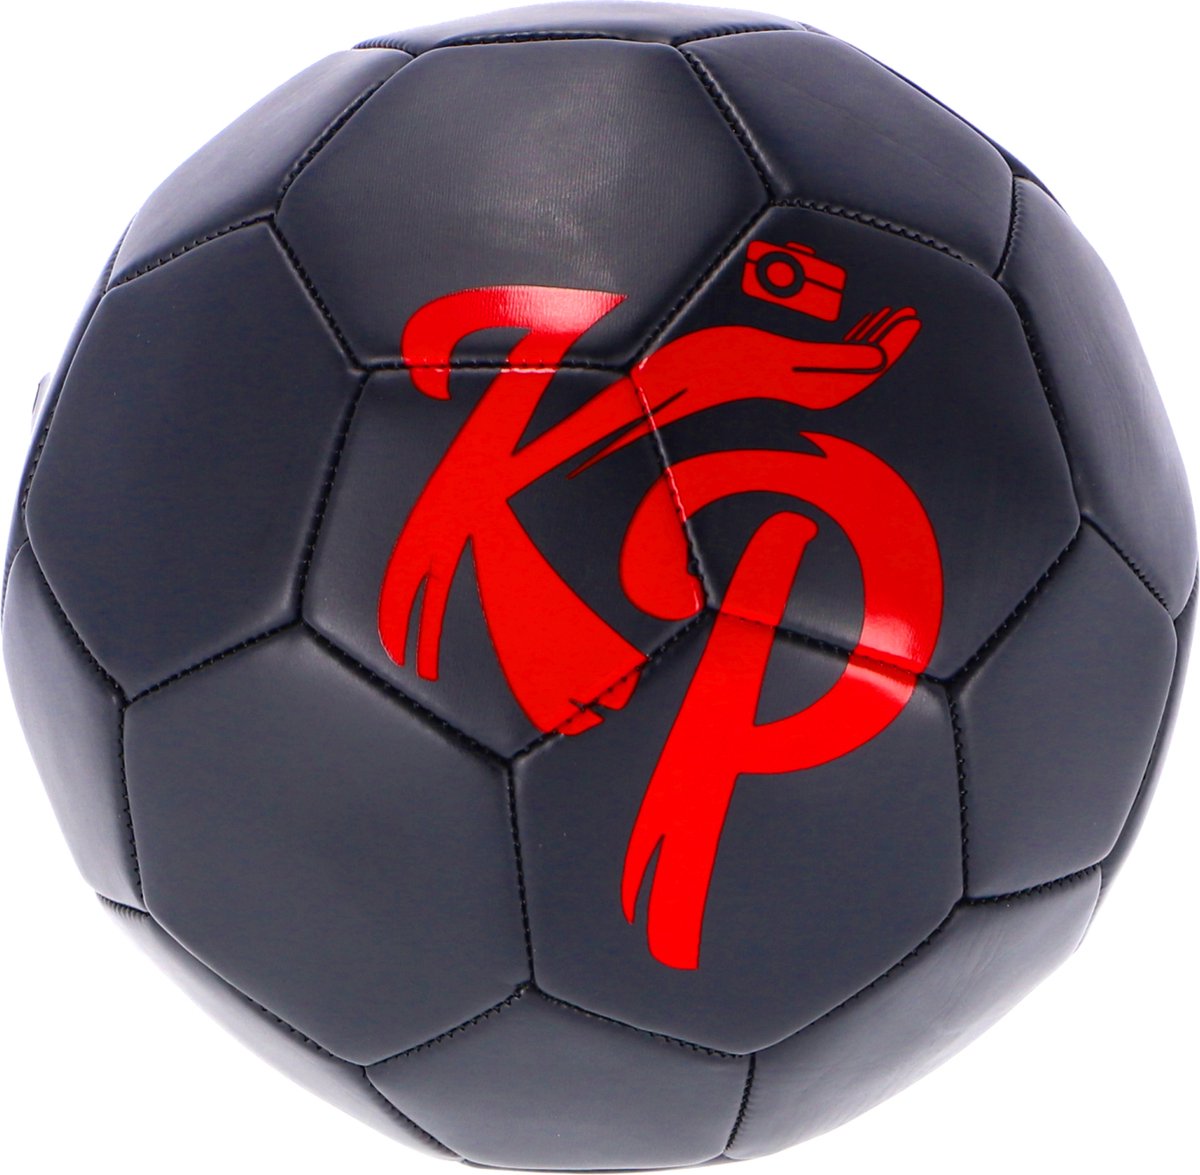 Knol Power Voetbal